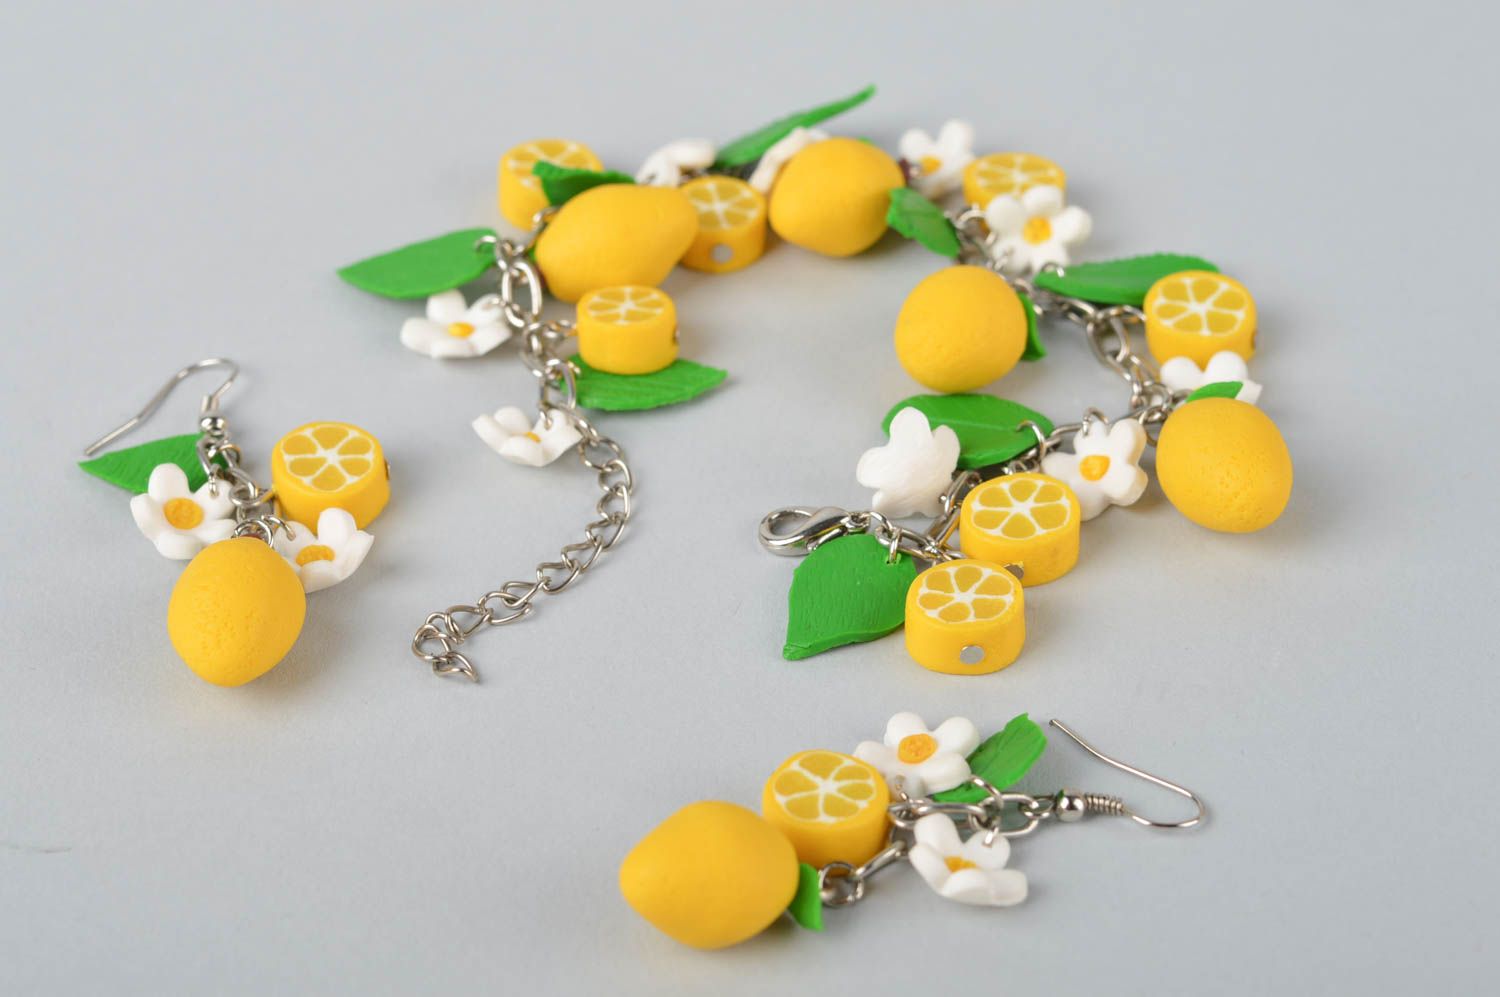 Lemon charms chain bracelet and earrings for teen girls photo 2